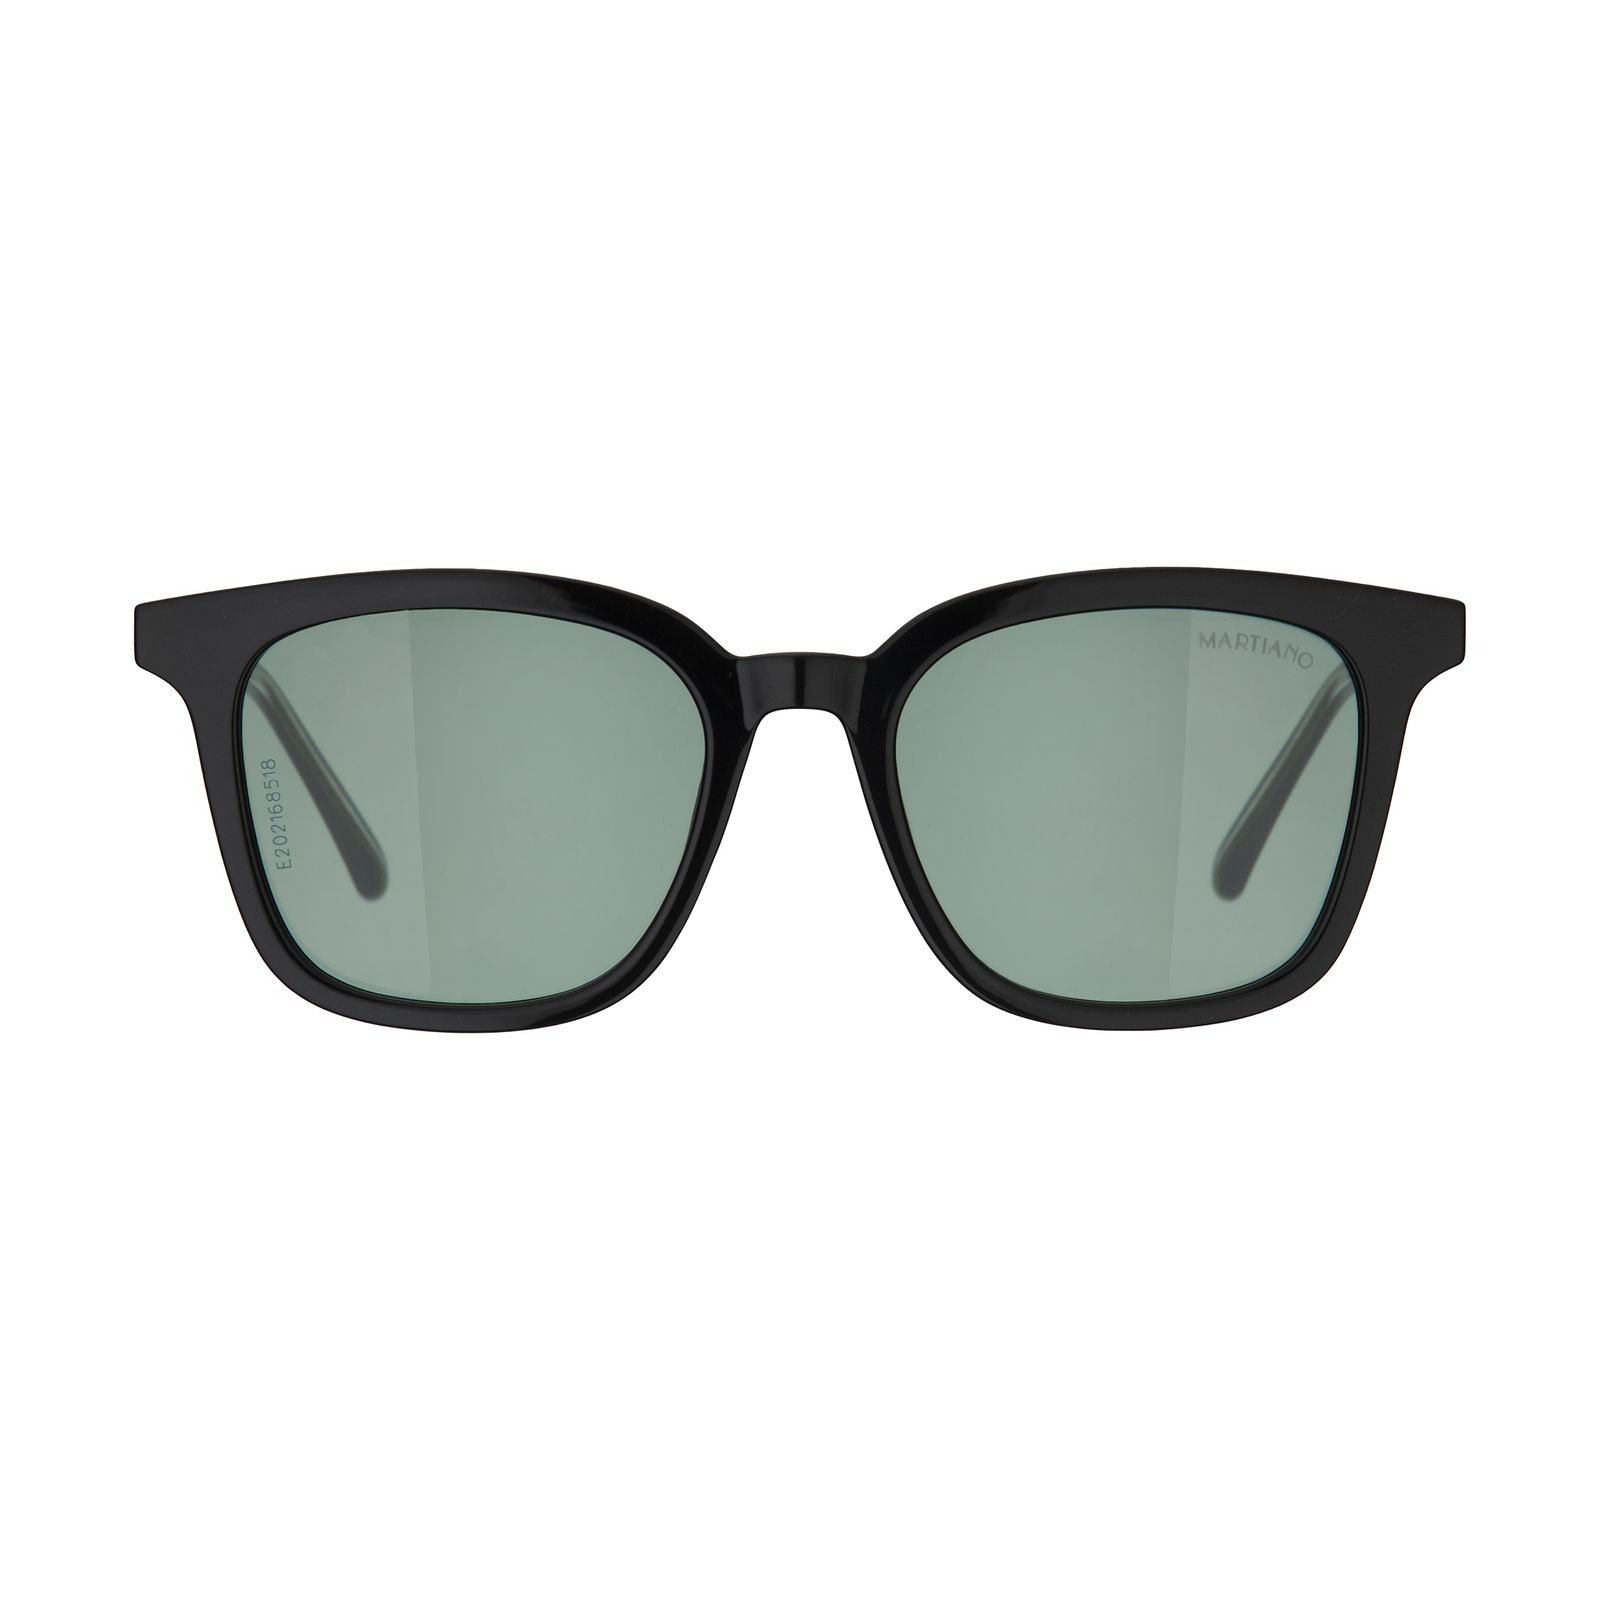 عینک آفتابی مارتیانو مدل 1979 c4 -  - 1